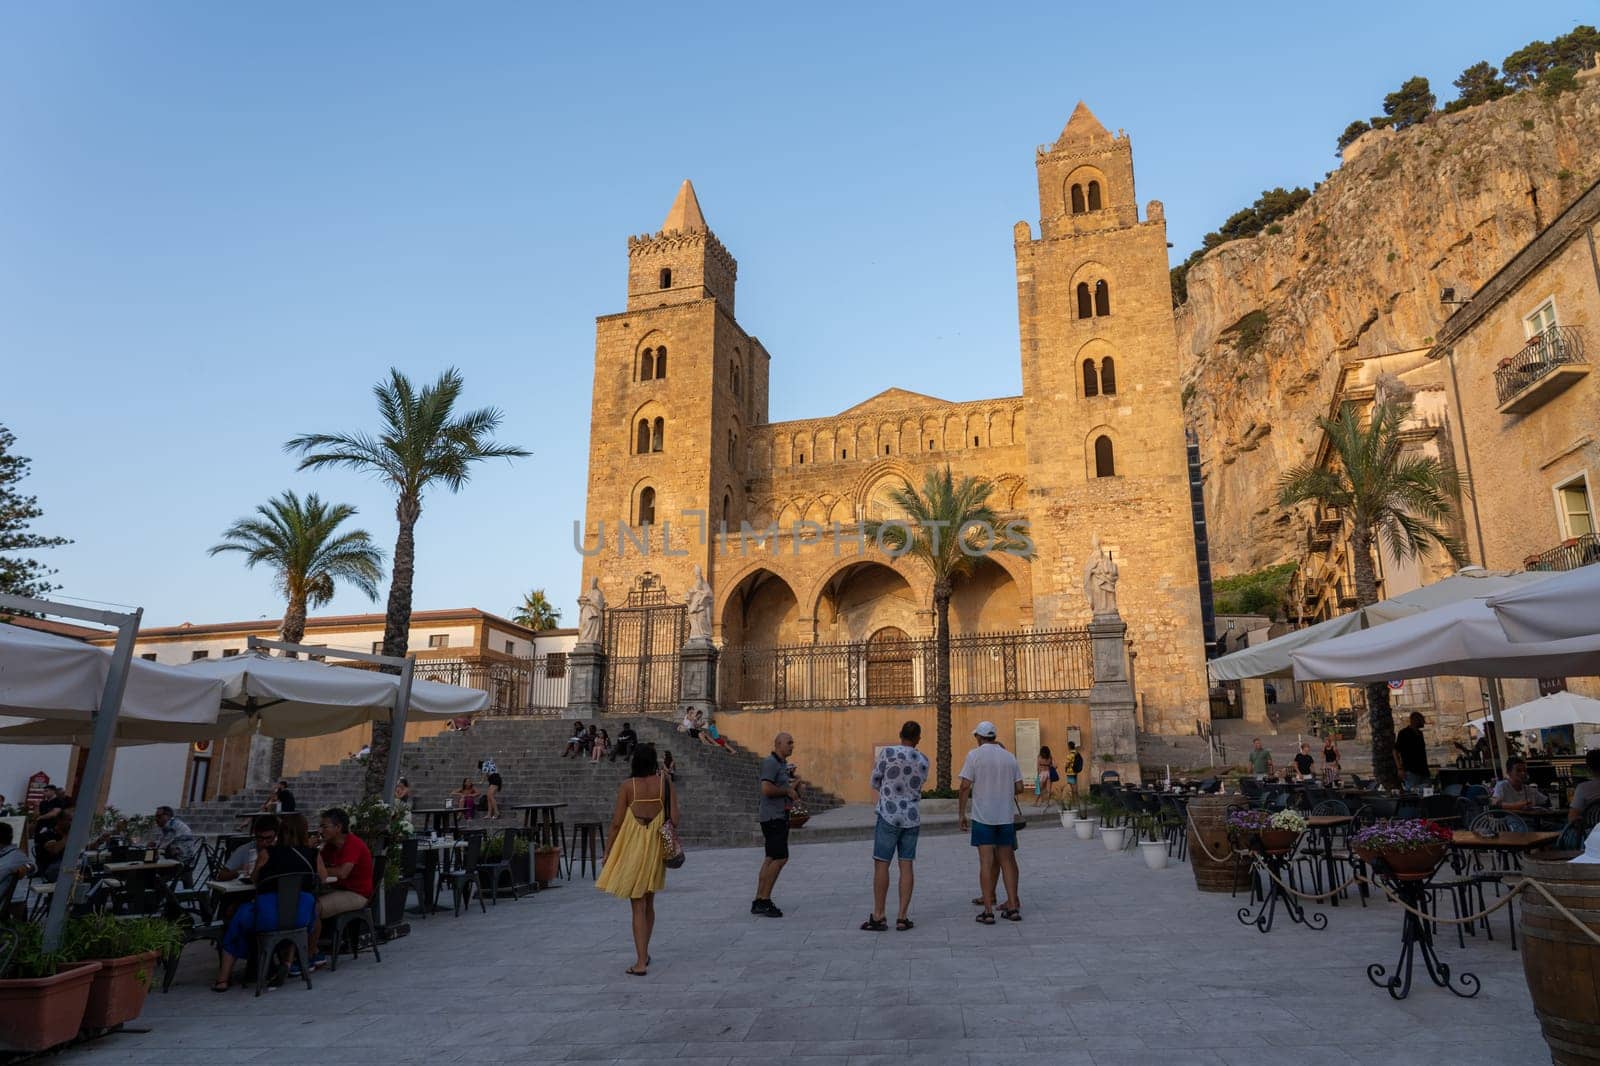 Cathedral of Cefalu, Sicily by oliverfoerstner